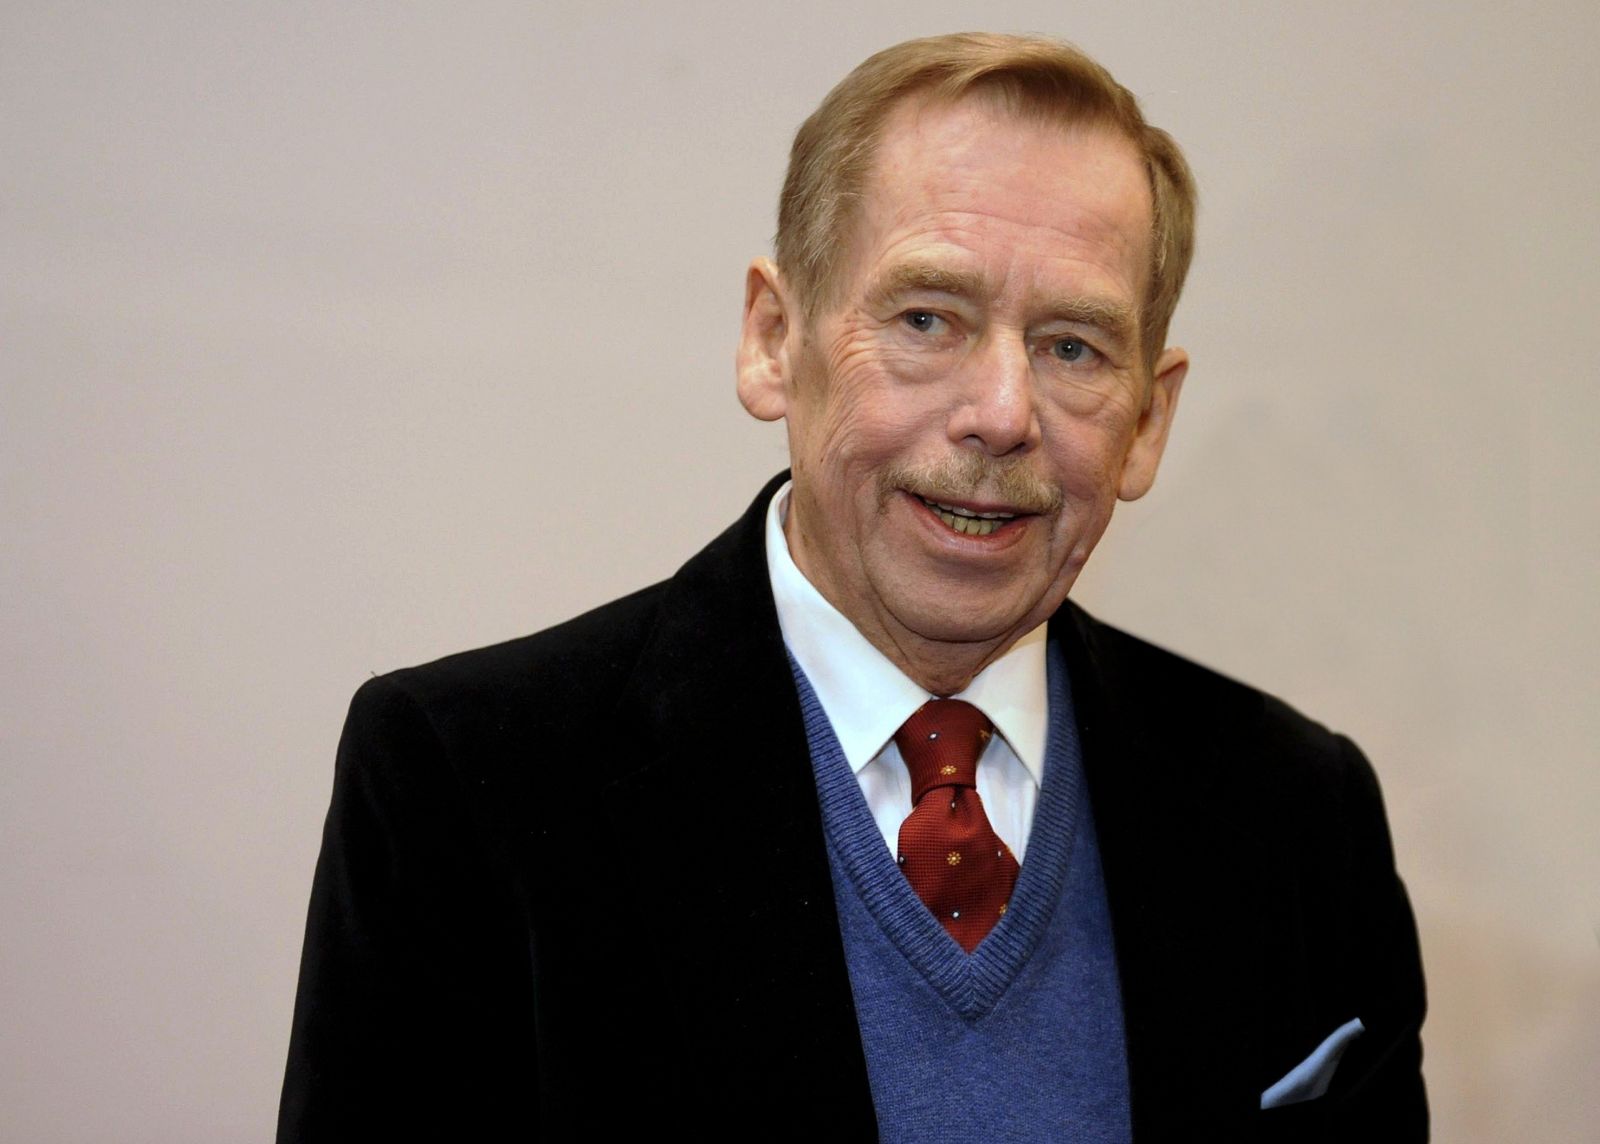 Nejlepším českým prezidentem je Václav Havel. Zeman je podle Čechů nejhorším, nelíbí se jim jeho vystupování na veřejnosti